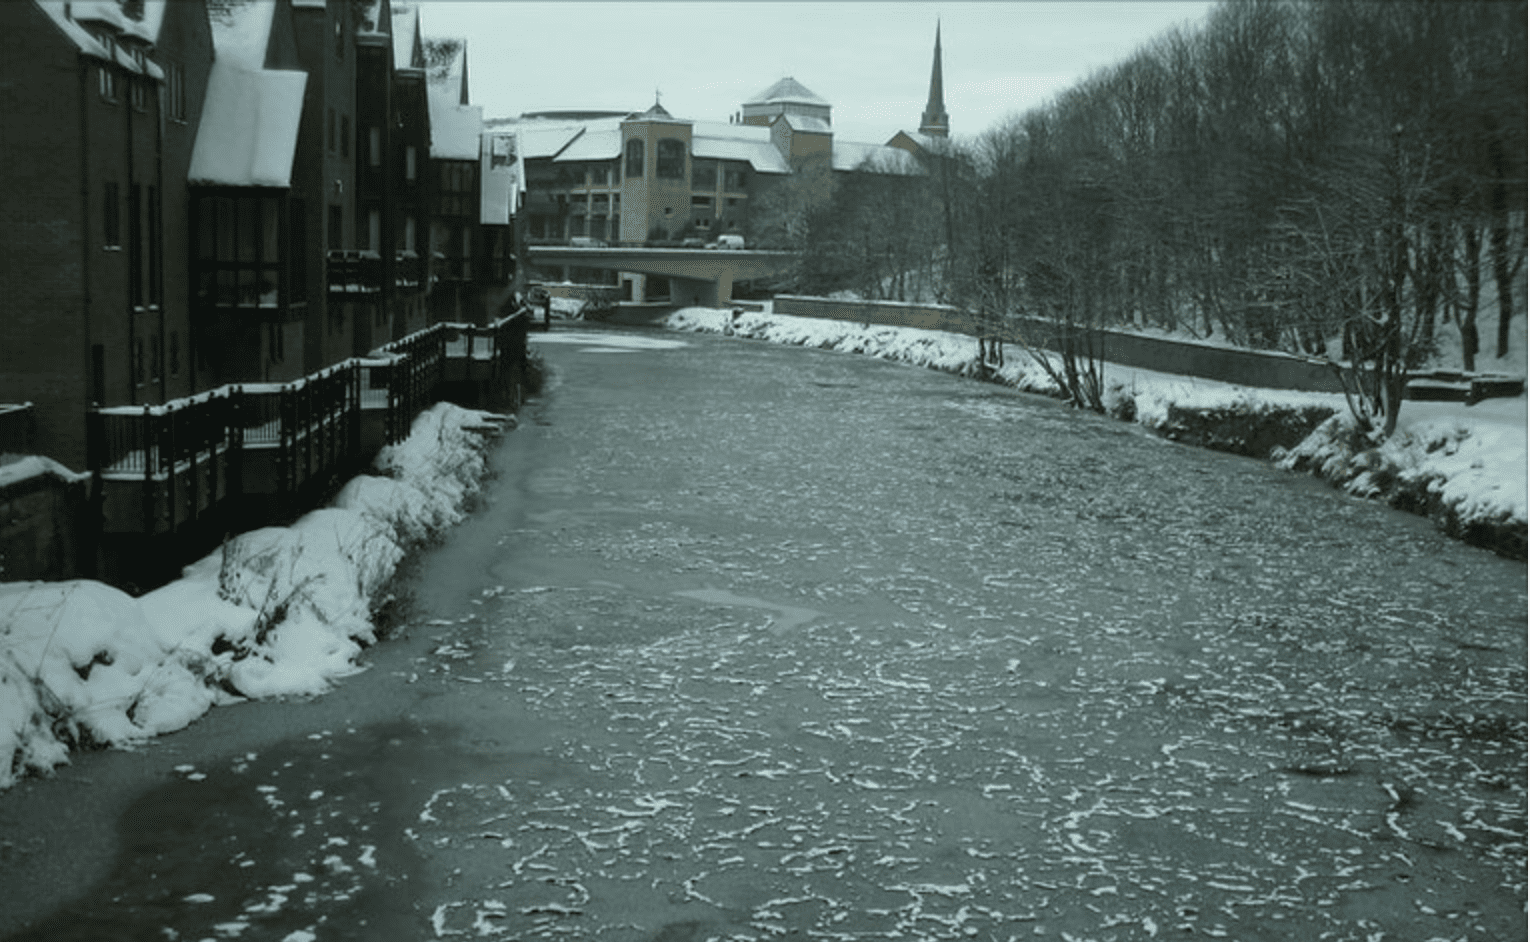 frozen river wear december 2010